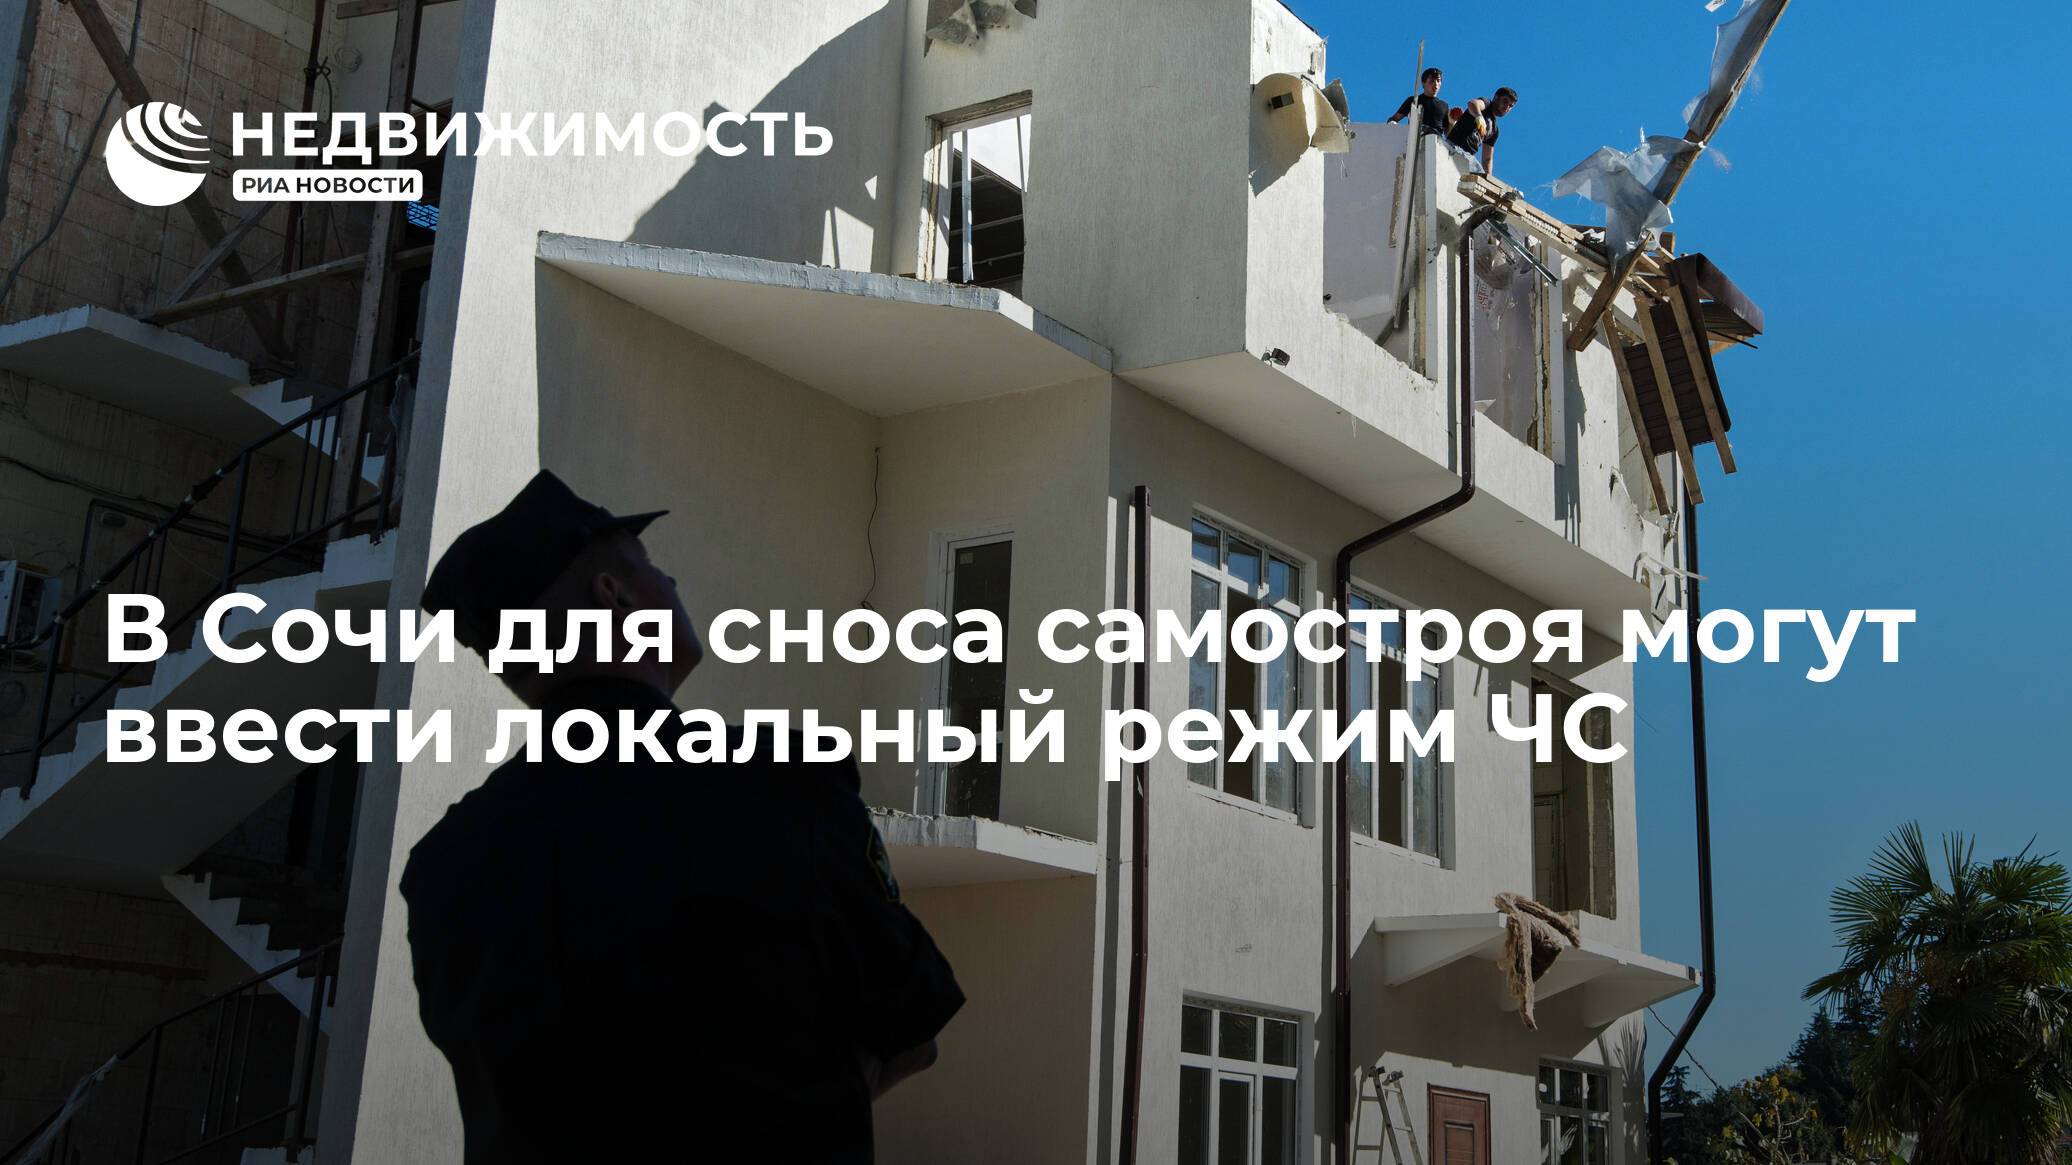 «через 50 лет их неизбежно снесут»: московские высотки – жилье будущего или «мусорная» катастрофа?